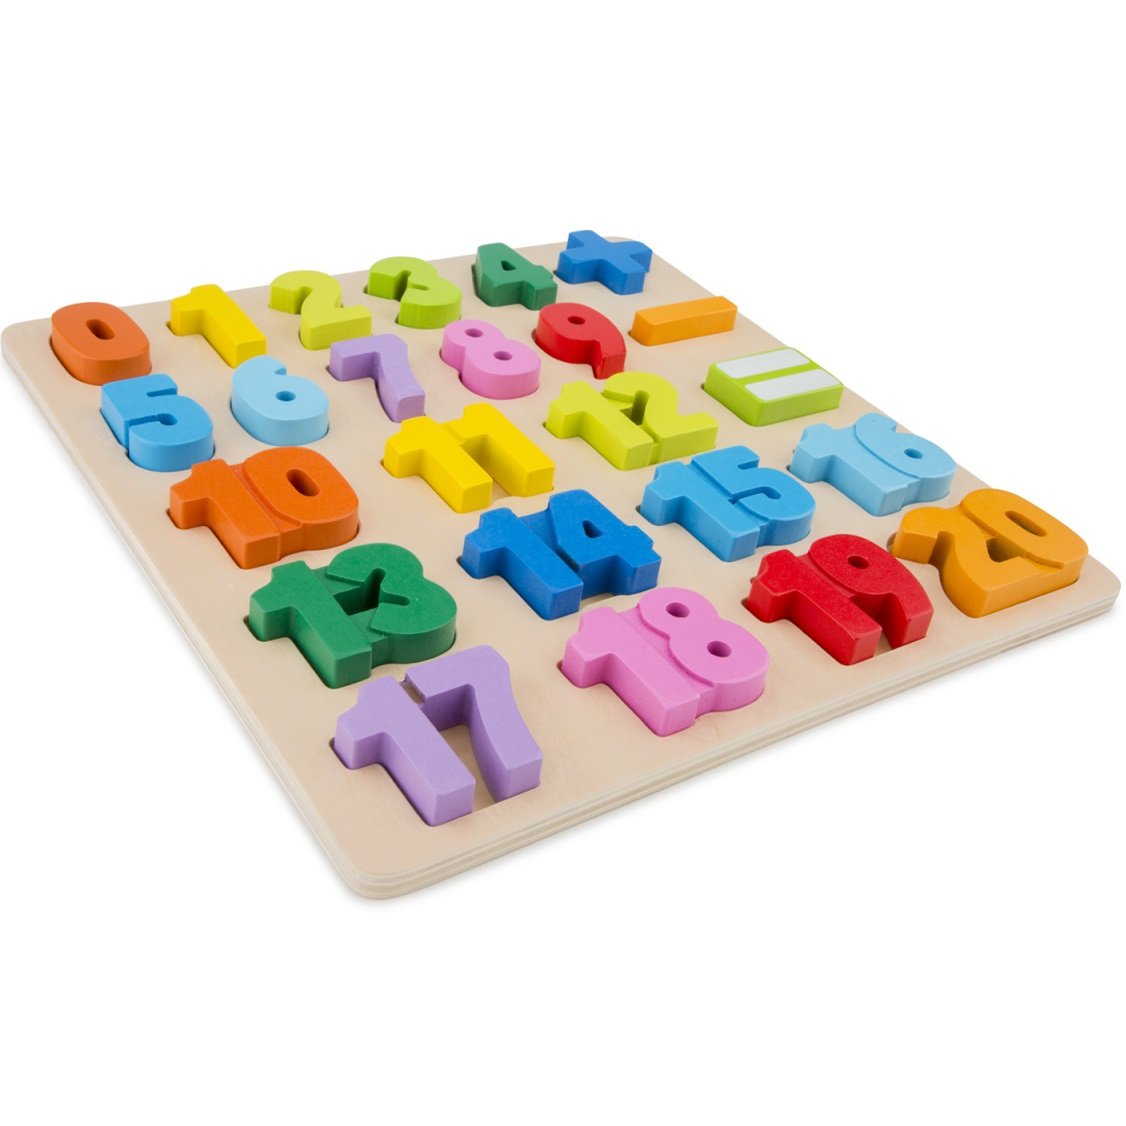 Пазл New Classic Toys Азбука, английский, 26 элементов (10534) - фото 1